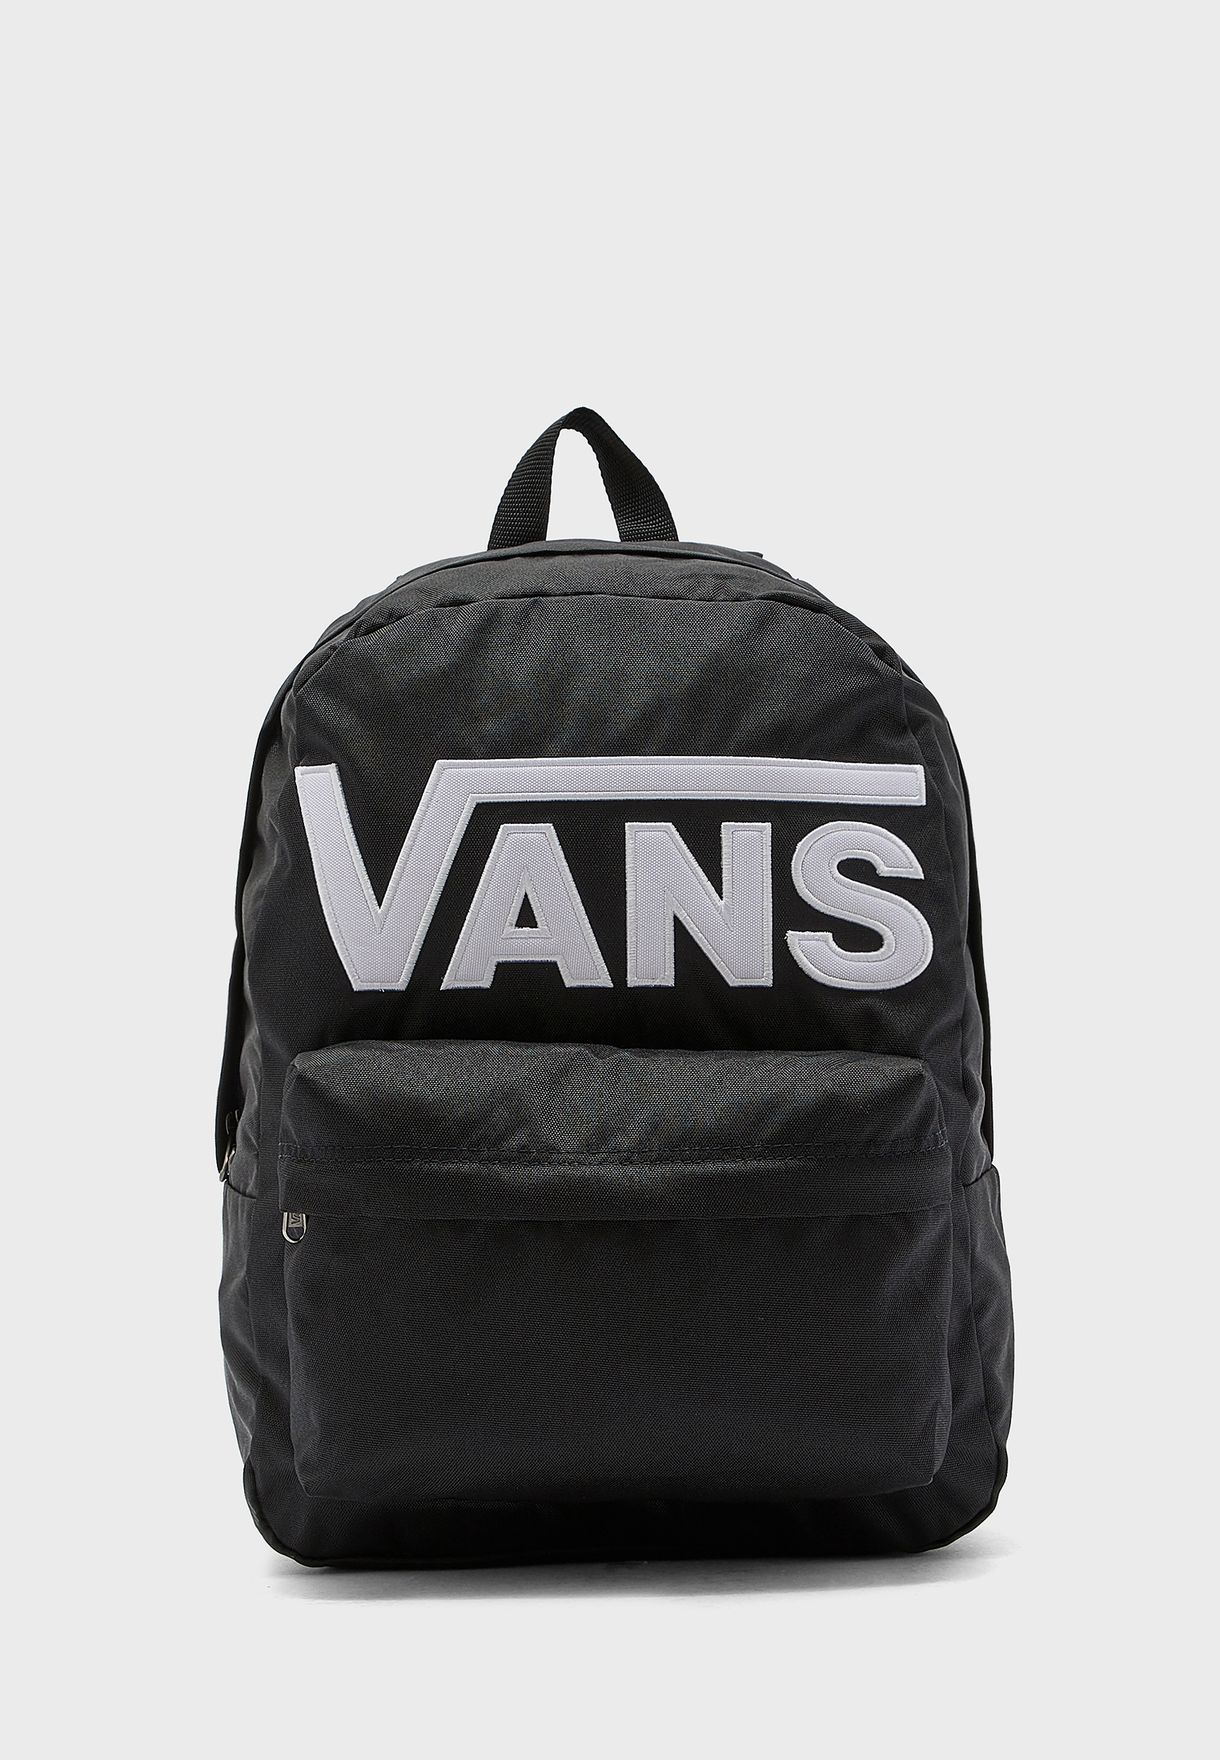 where to buy vans backpacks